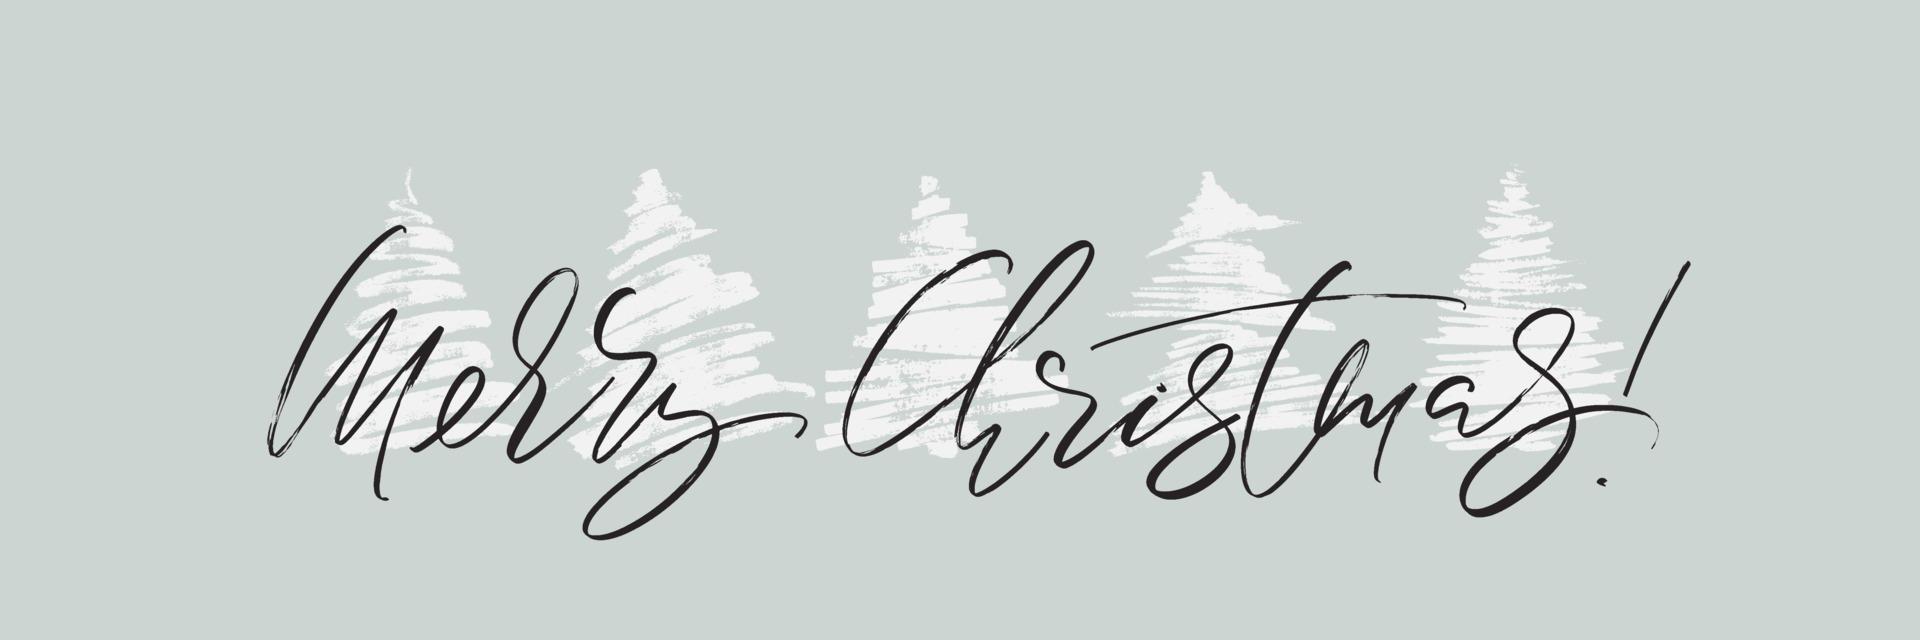 allegro Natale orizzontale saluto carta design. vacanza vettore illustrazione con lettering composizione e mano disegnato Natale alberi sagome.